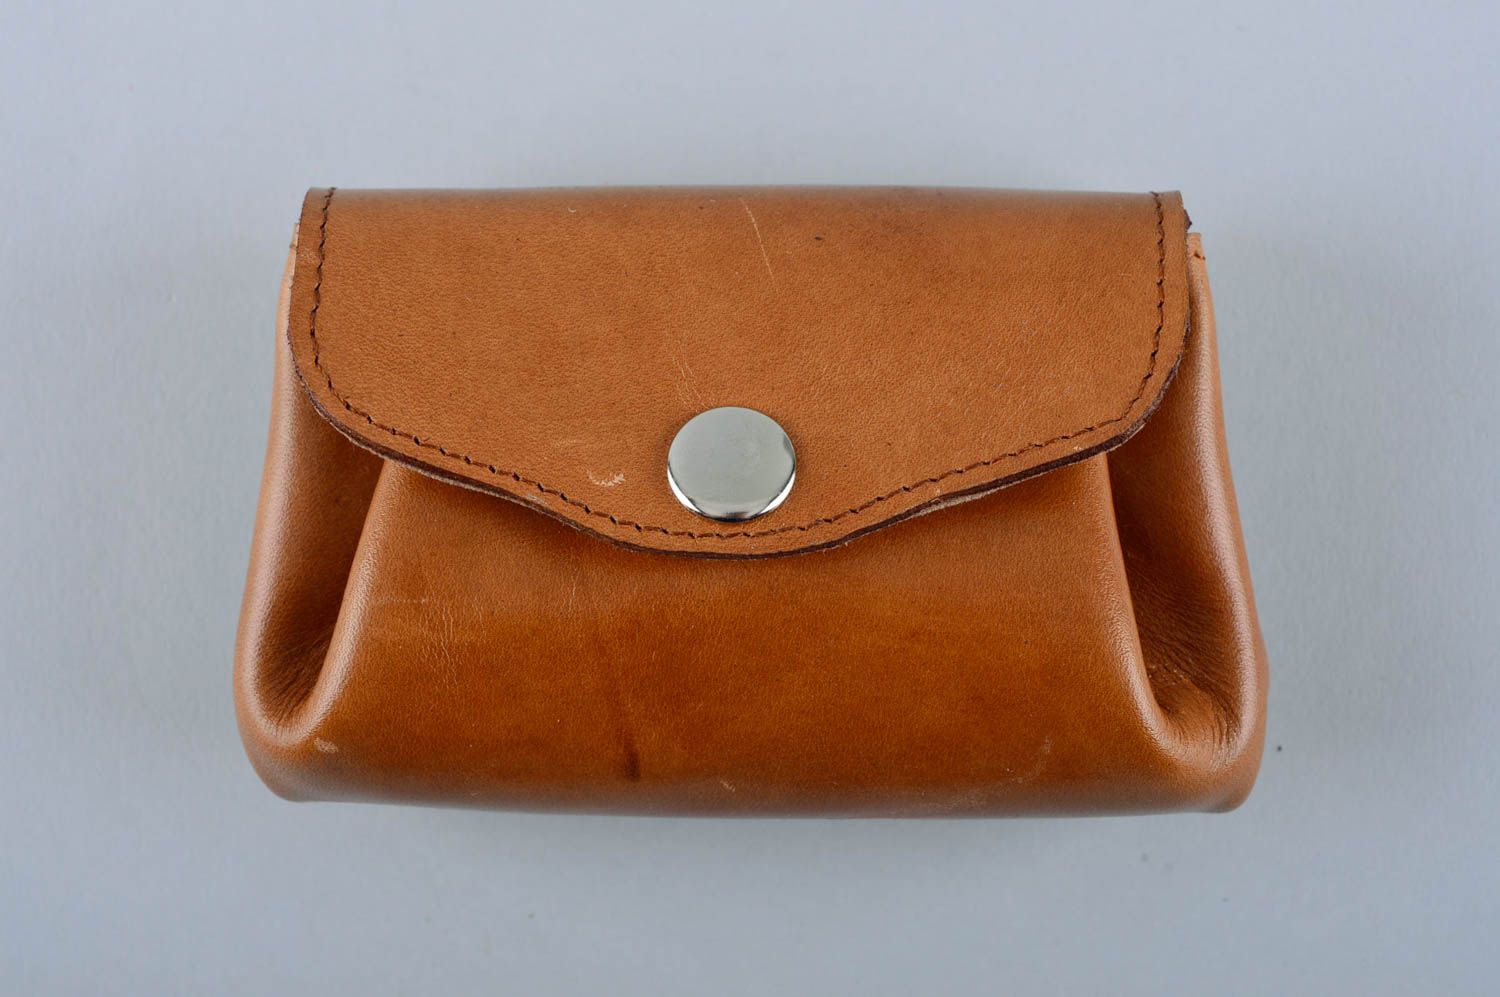 Кожаный кошелек ручной работы аксессуар из кожи красивый подарок женщине фото 2